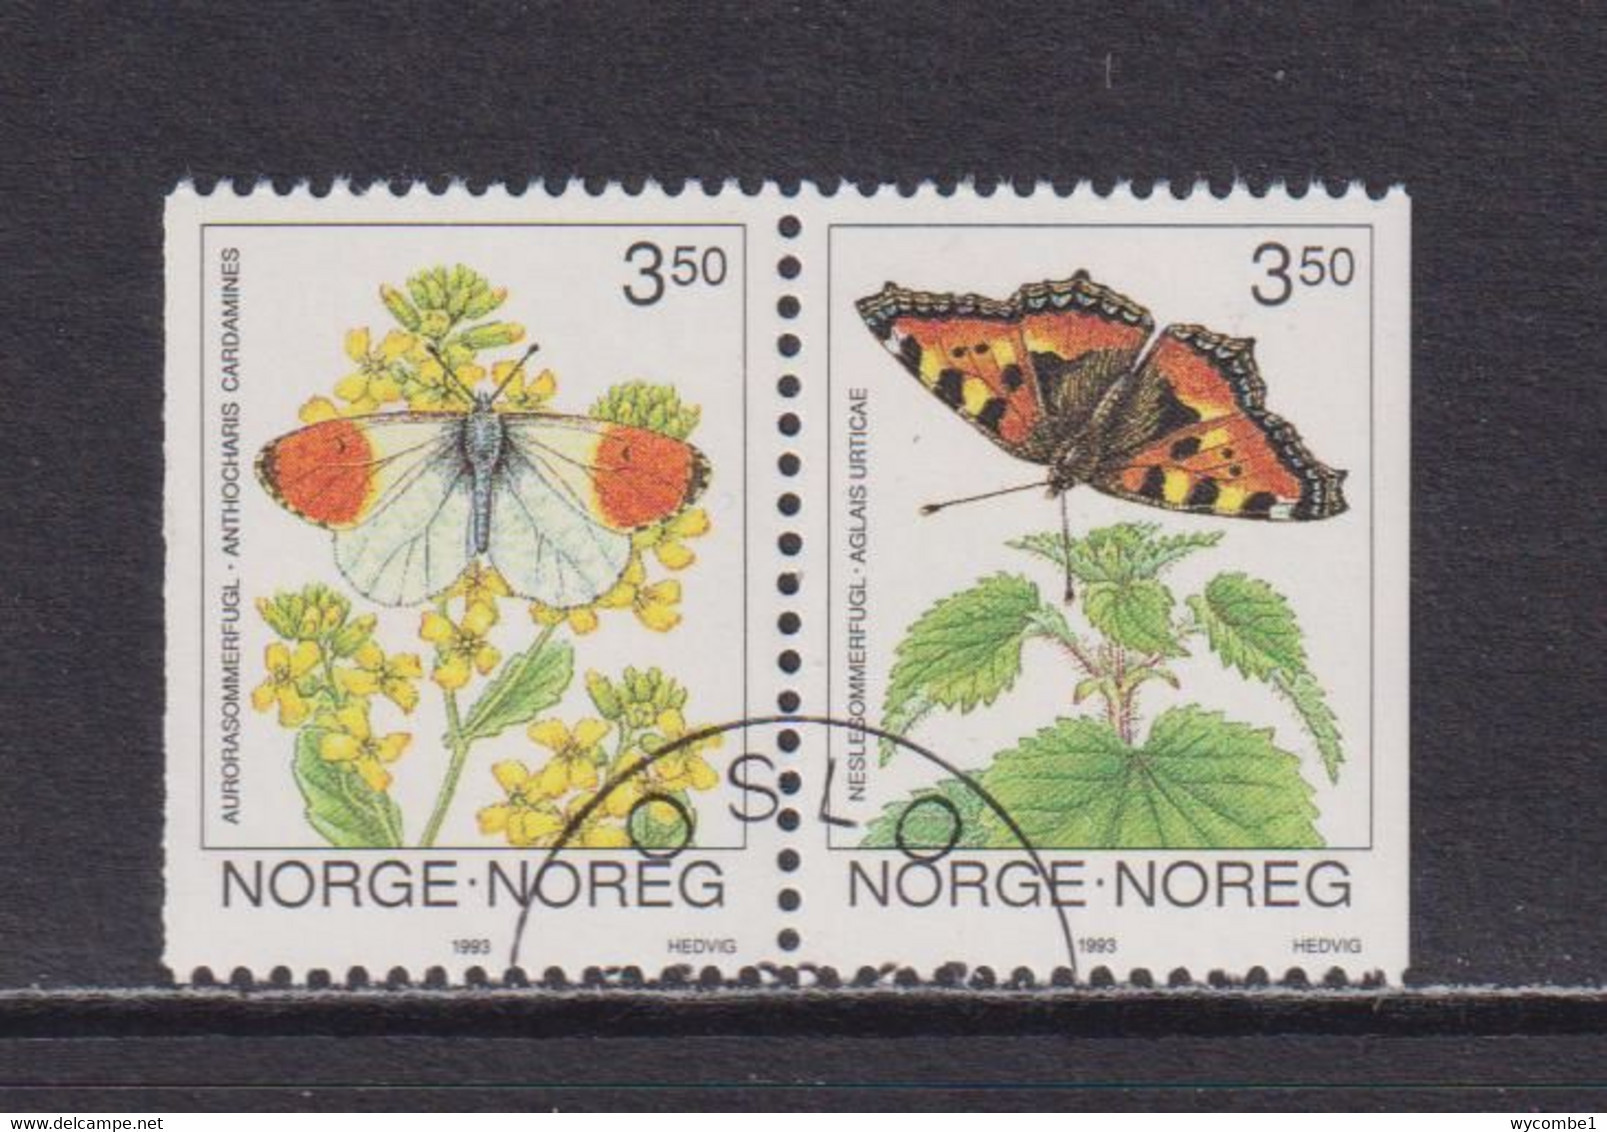 NORWAY - 1993 Butterflies Booklet Pair Used As Scan - Gebruikt